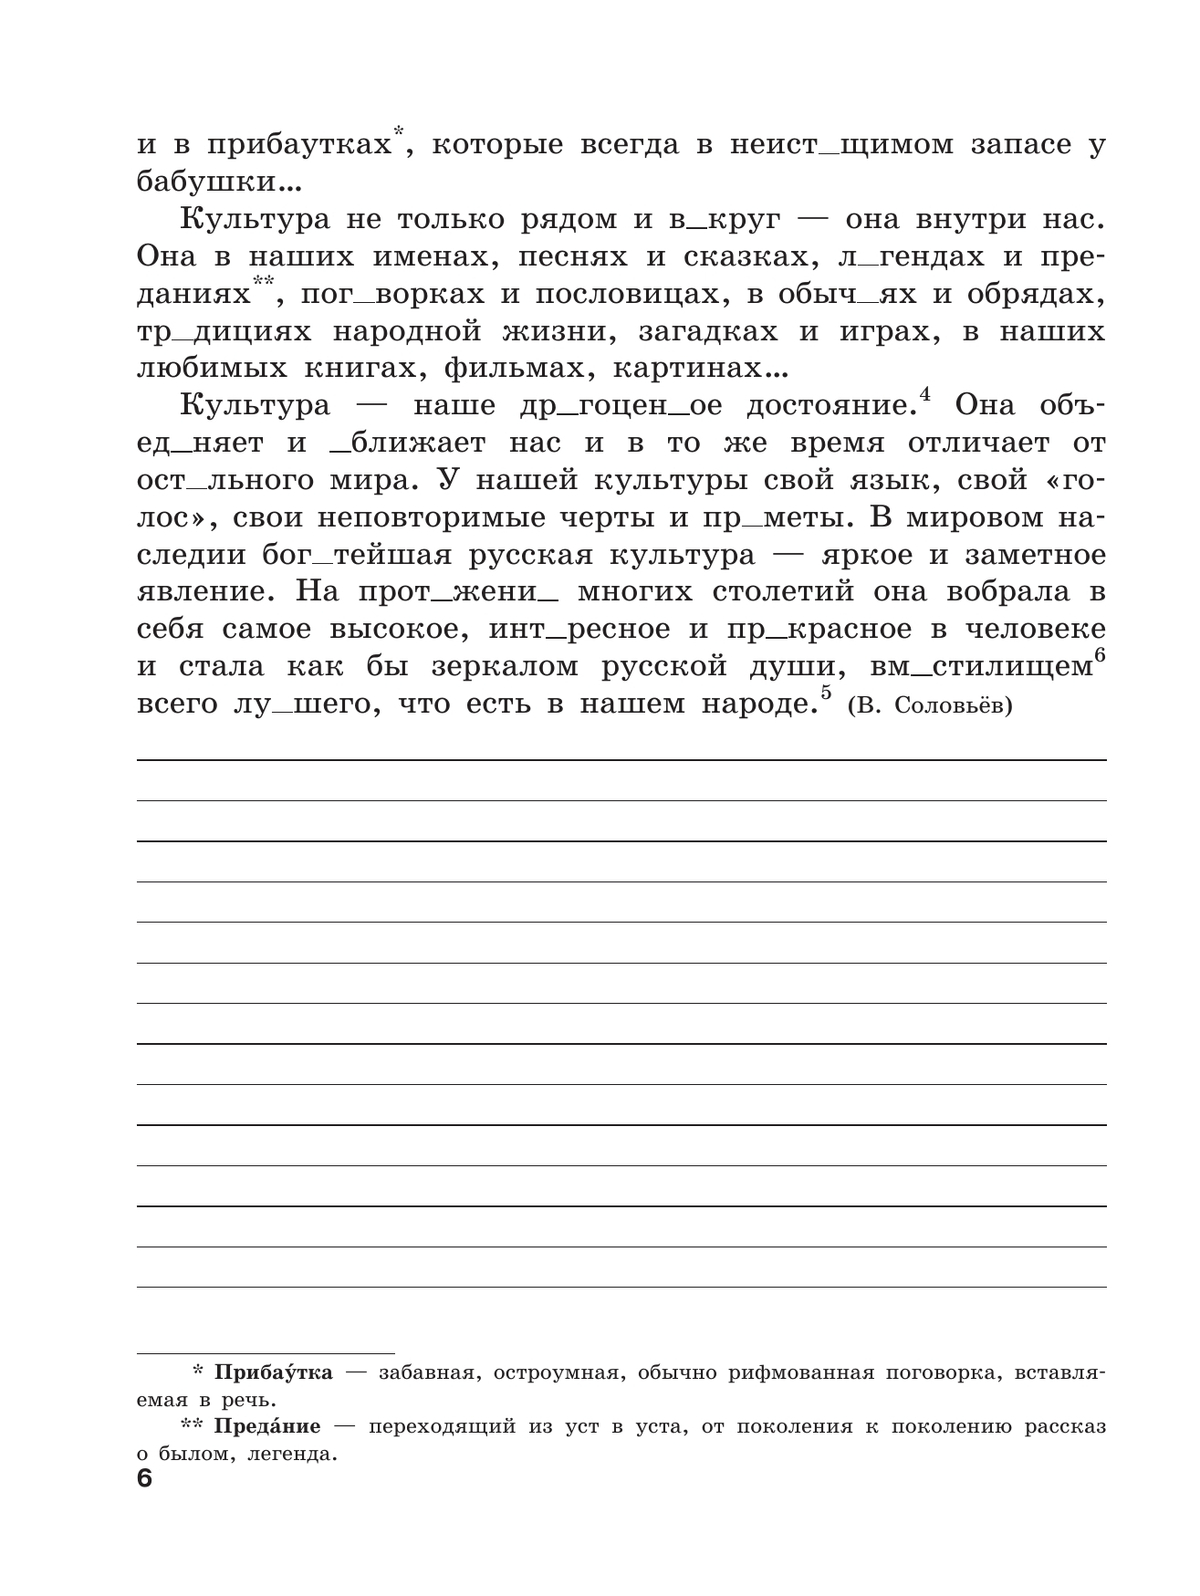 Скорая помощь по русскому языку. Рабочая тетрадь. 8 класс. В 2 ч. Часть 1 7